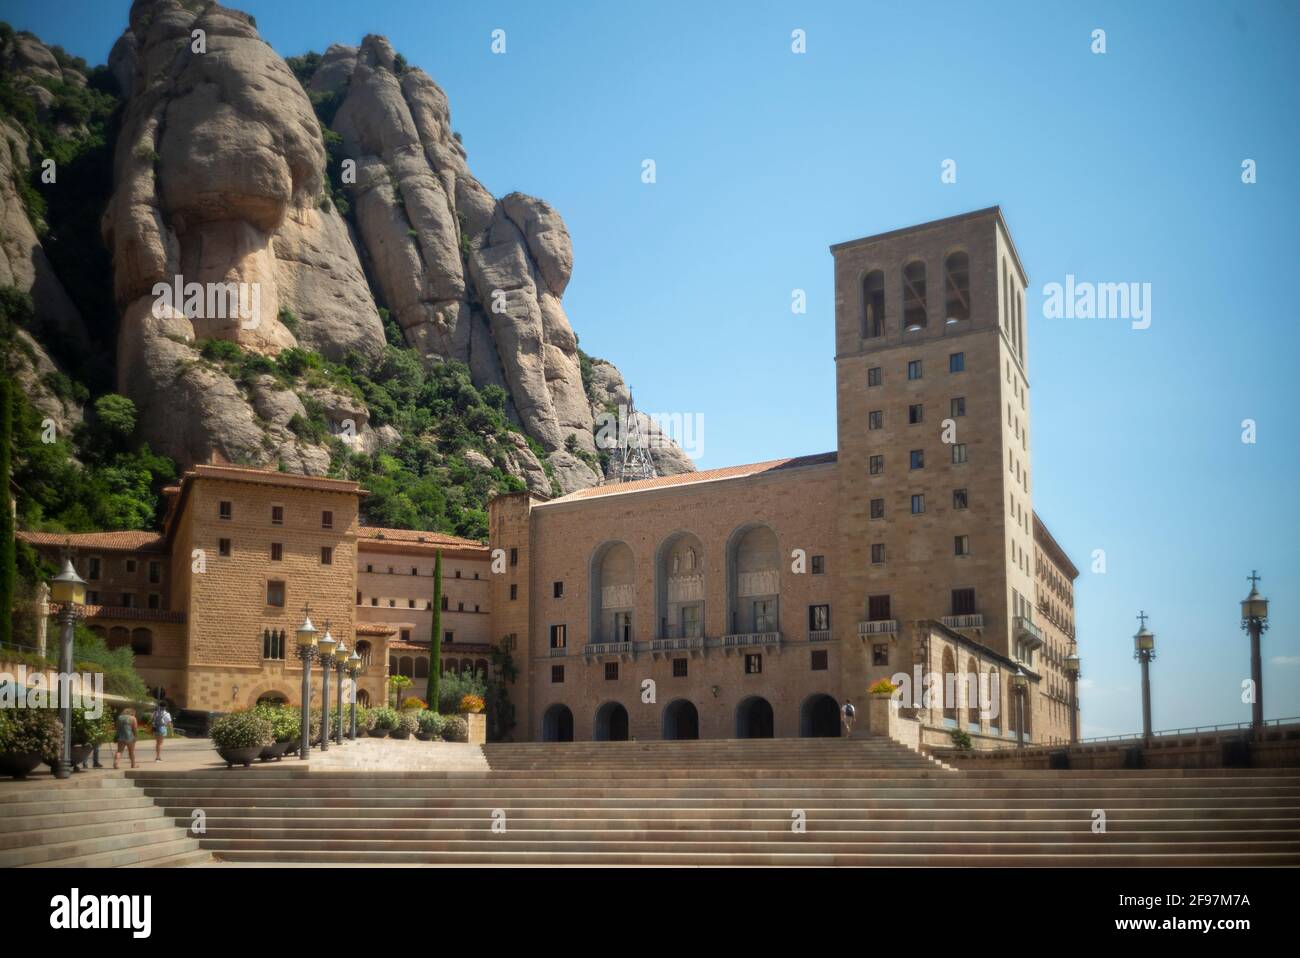 Pas beaucoup de tourisme au monastère de Montserrat à Monistrol - régulier il y a 10.000 personnes par jour - pendant Corona il n'y avait qu'environ 40 personnes dans toute la région. Catalogne, Espagne Banque D'Images